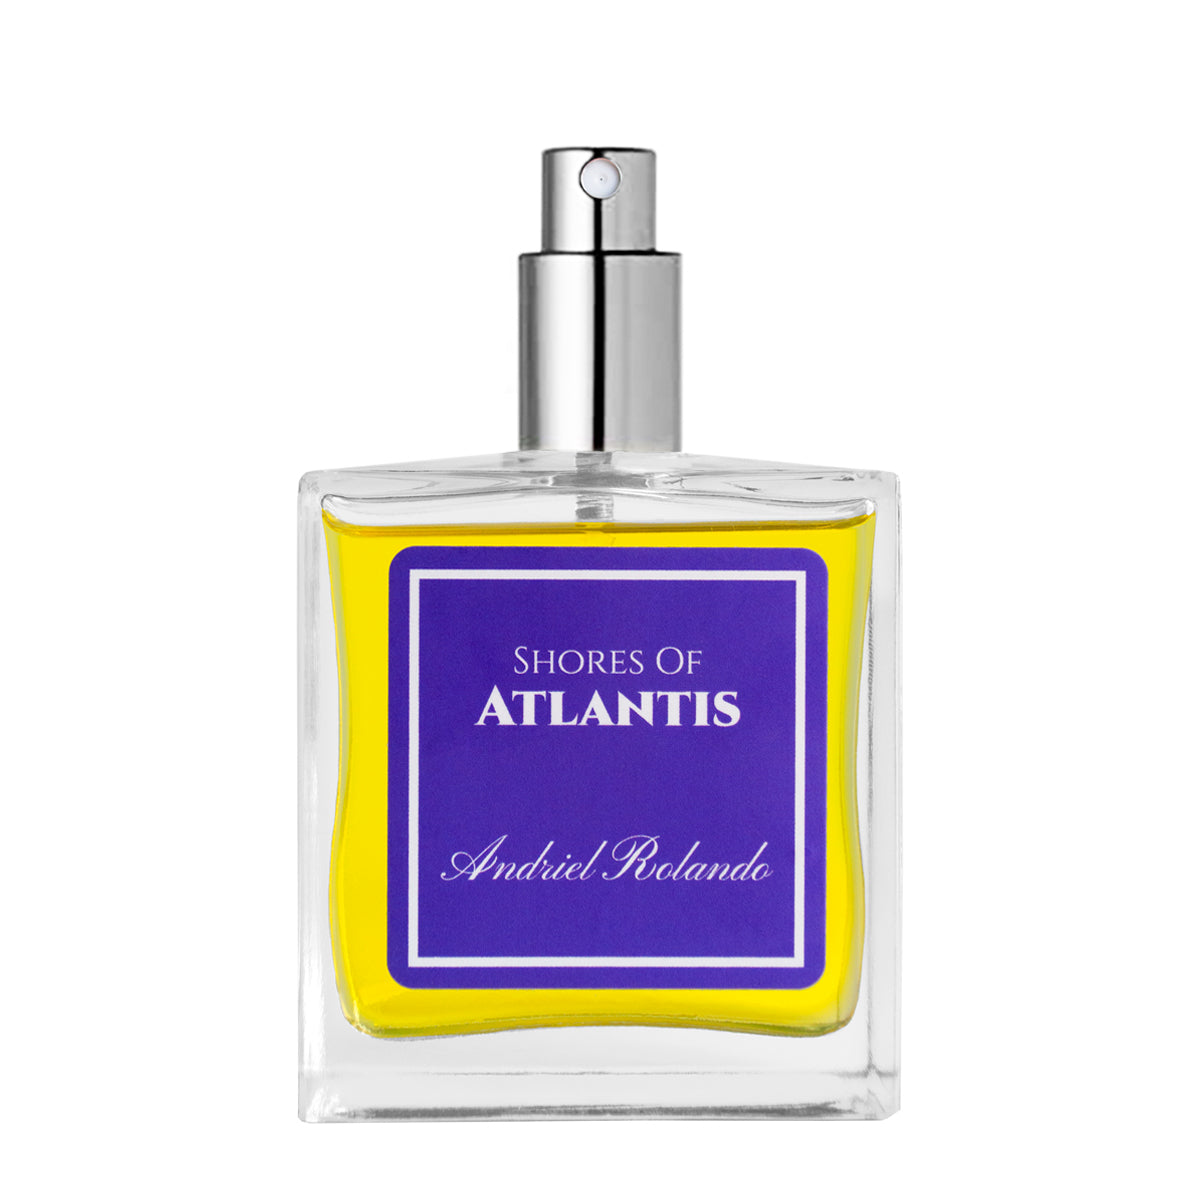 Shores of Atlantis  Men's Cologne & Fragrance by Andriel Rolando